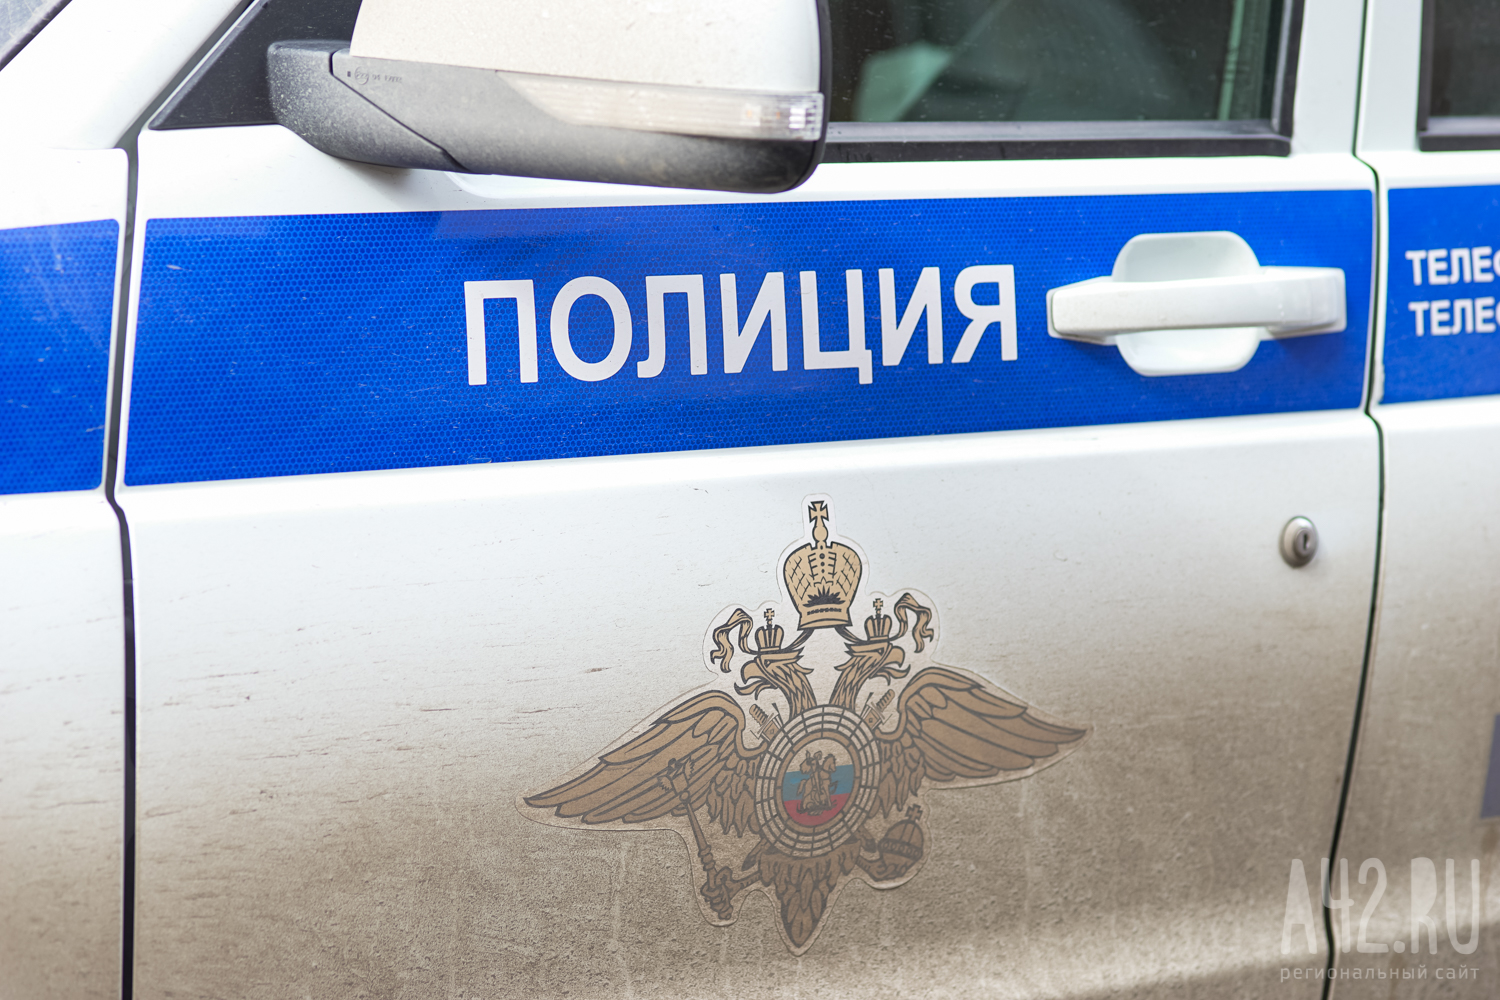 В Кузбассе автослесарь присвоил автомобиль клиента и продал его на запчасти